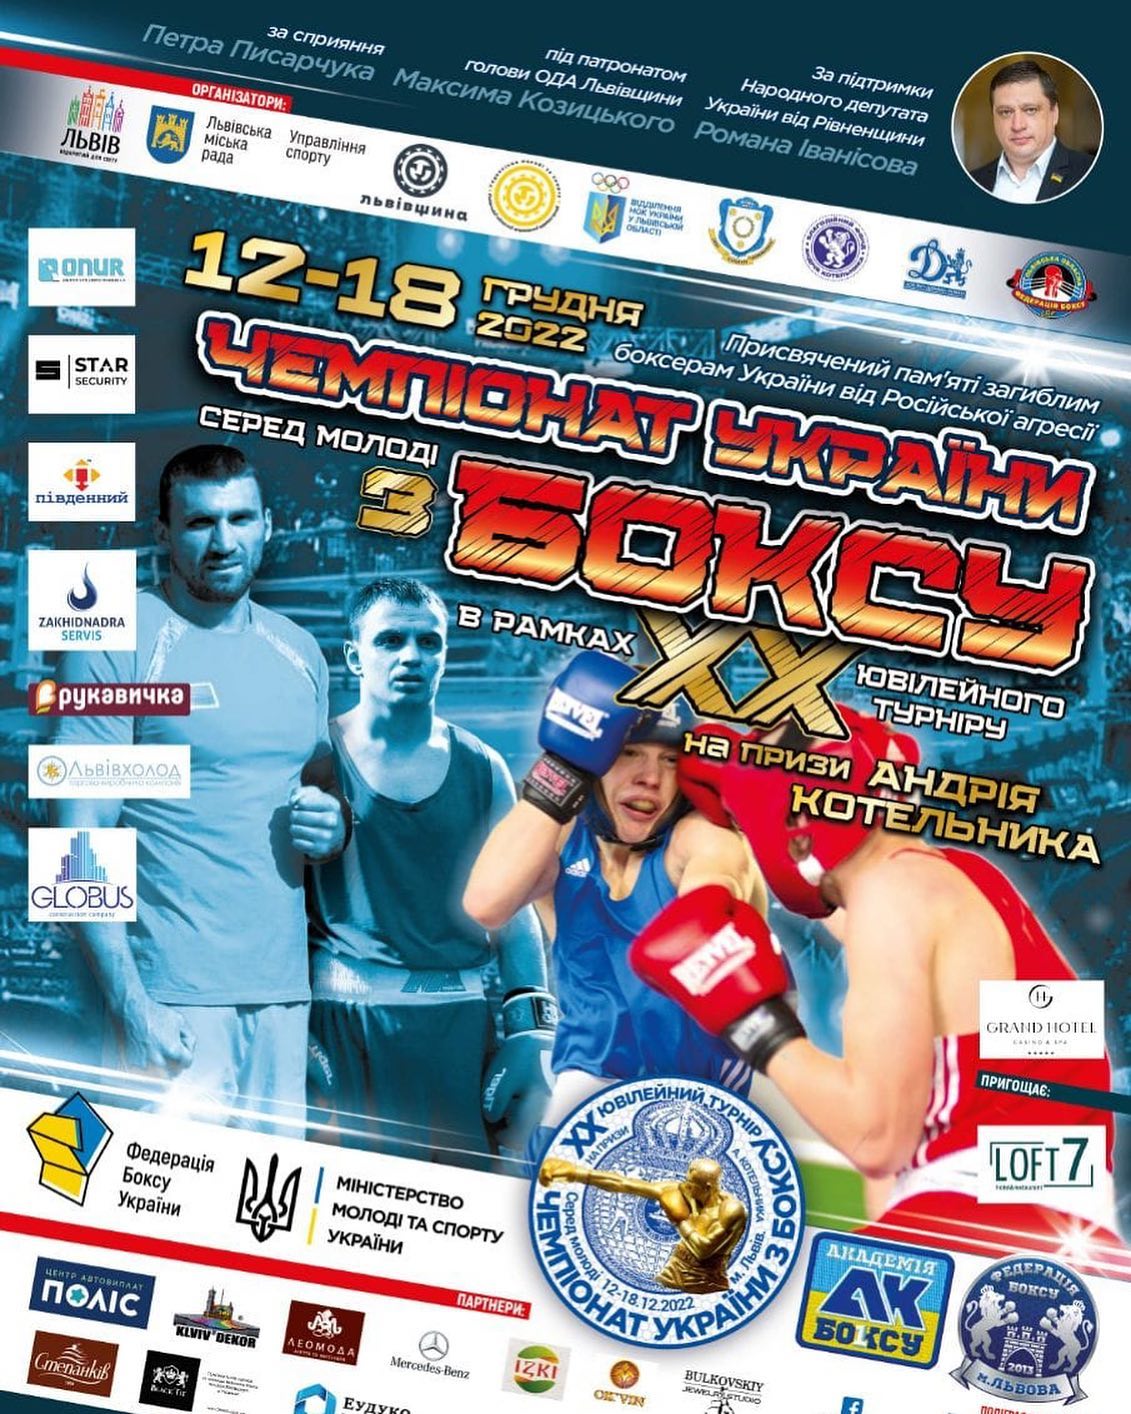 Урочисте відкриття Чемпіонату України з боксу серед молоді відбулося